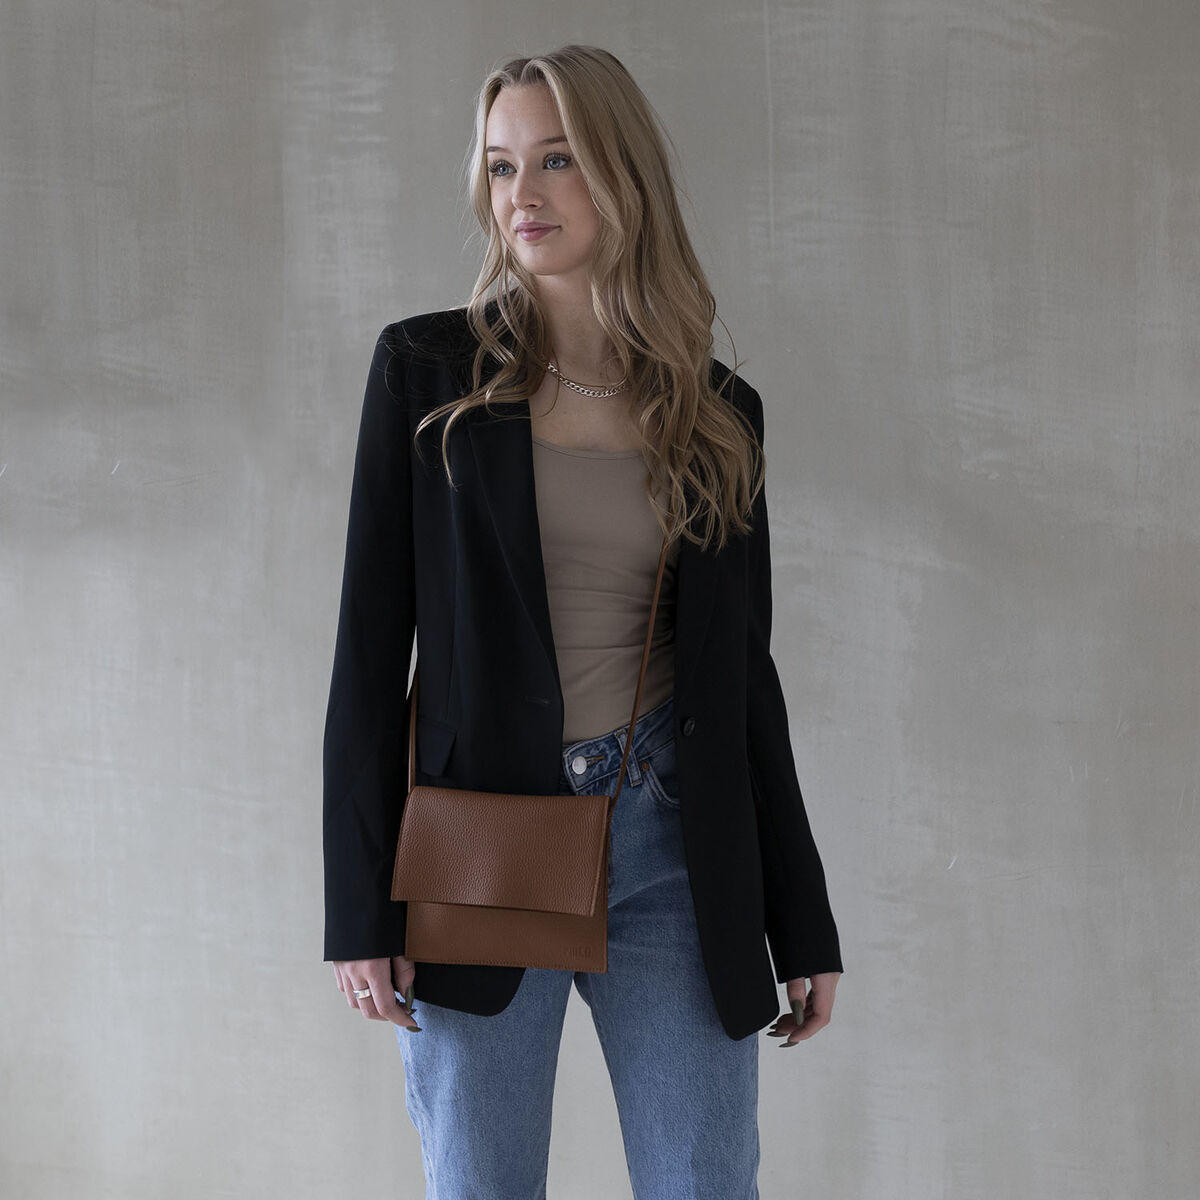 Miiko Jemma Leather Bag